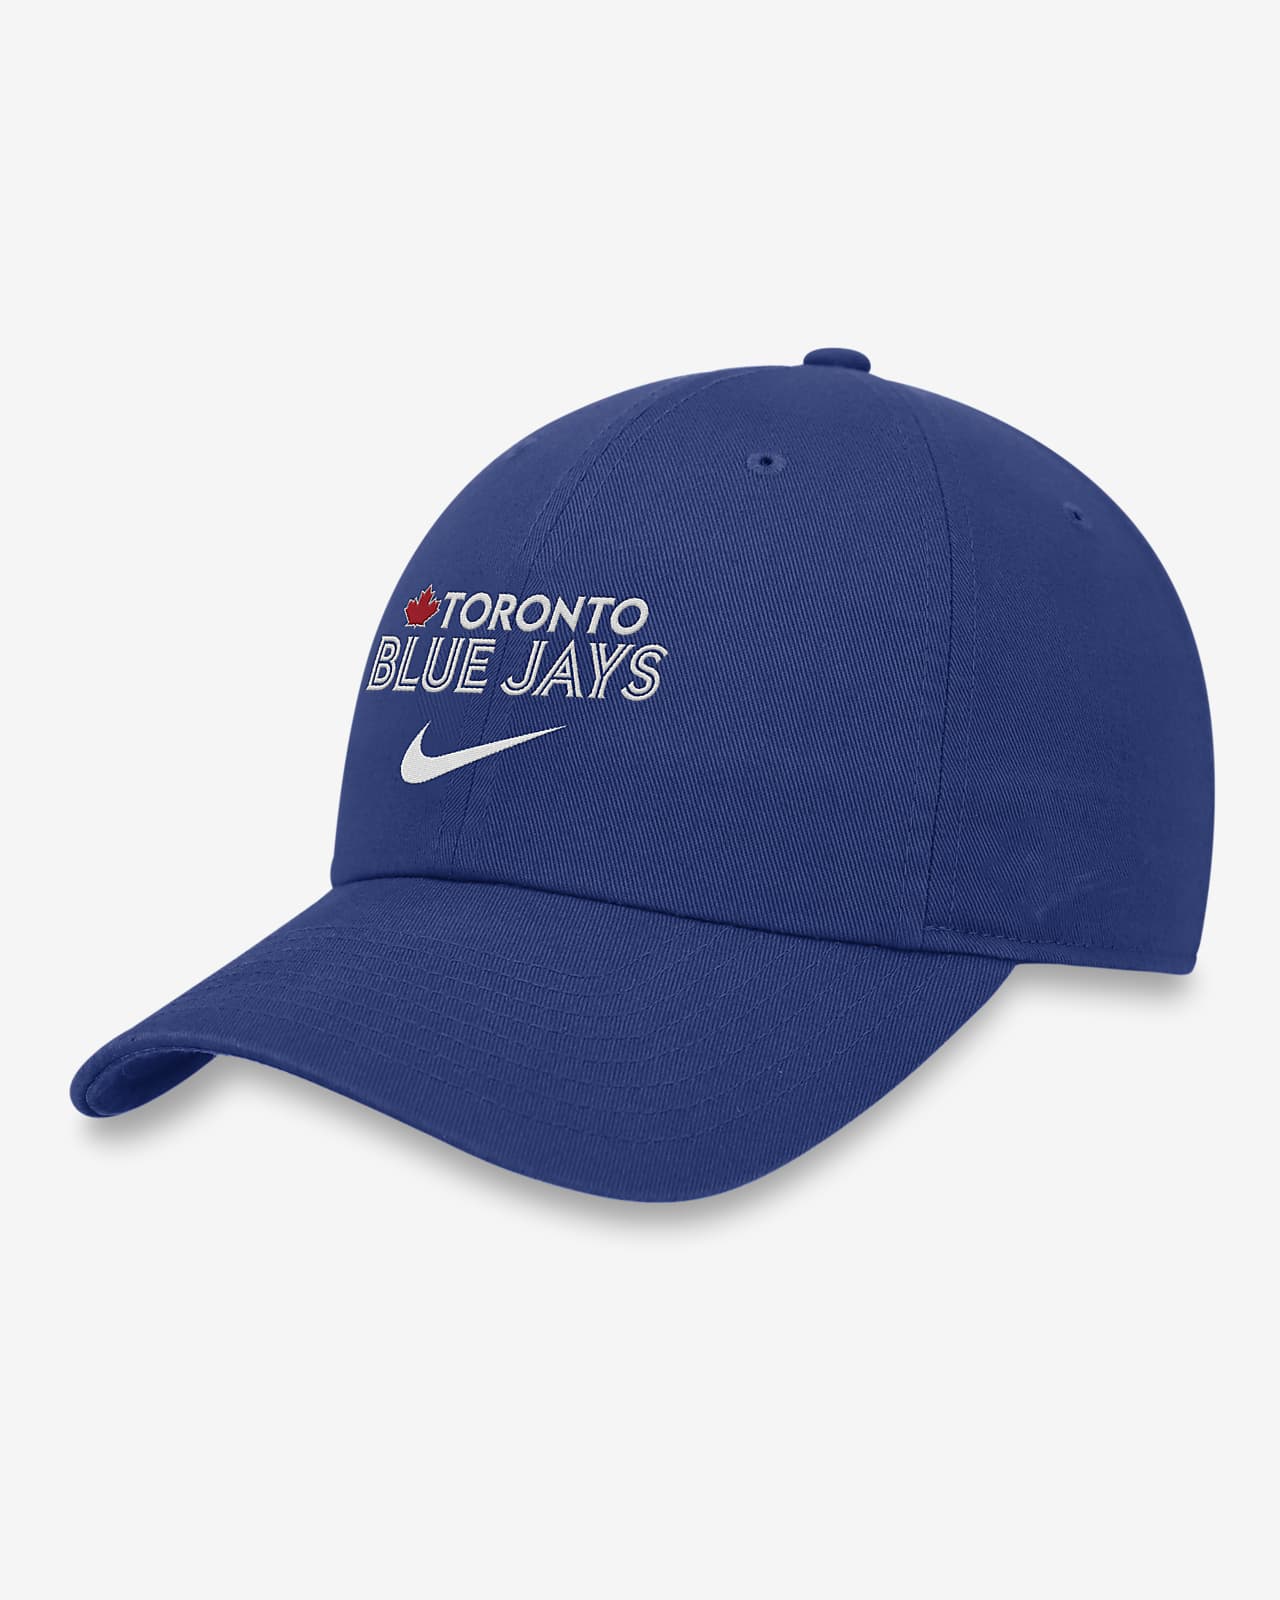 Toronto Blue Jays Heritage86 Wordmark Swoosh Men's Nike MLB Adjustable Hat.